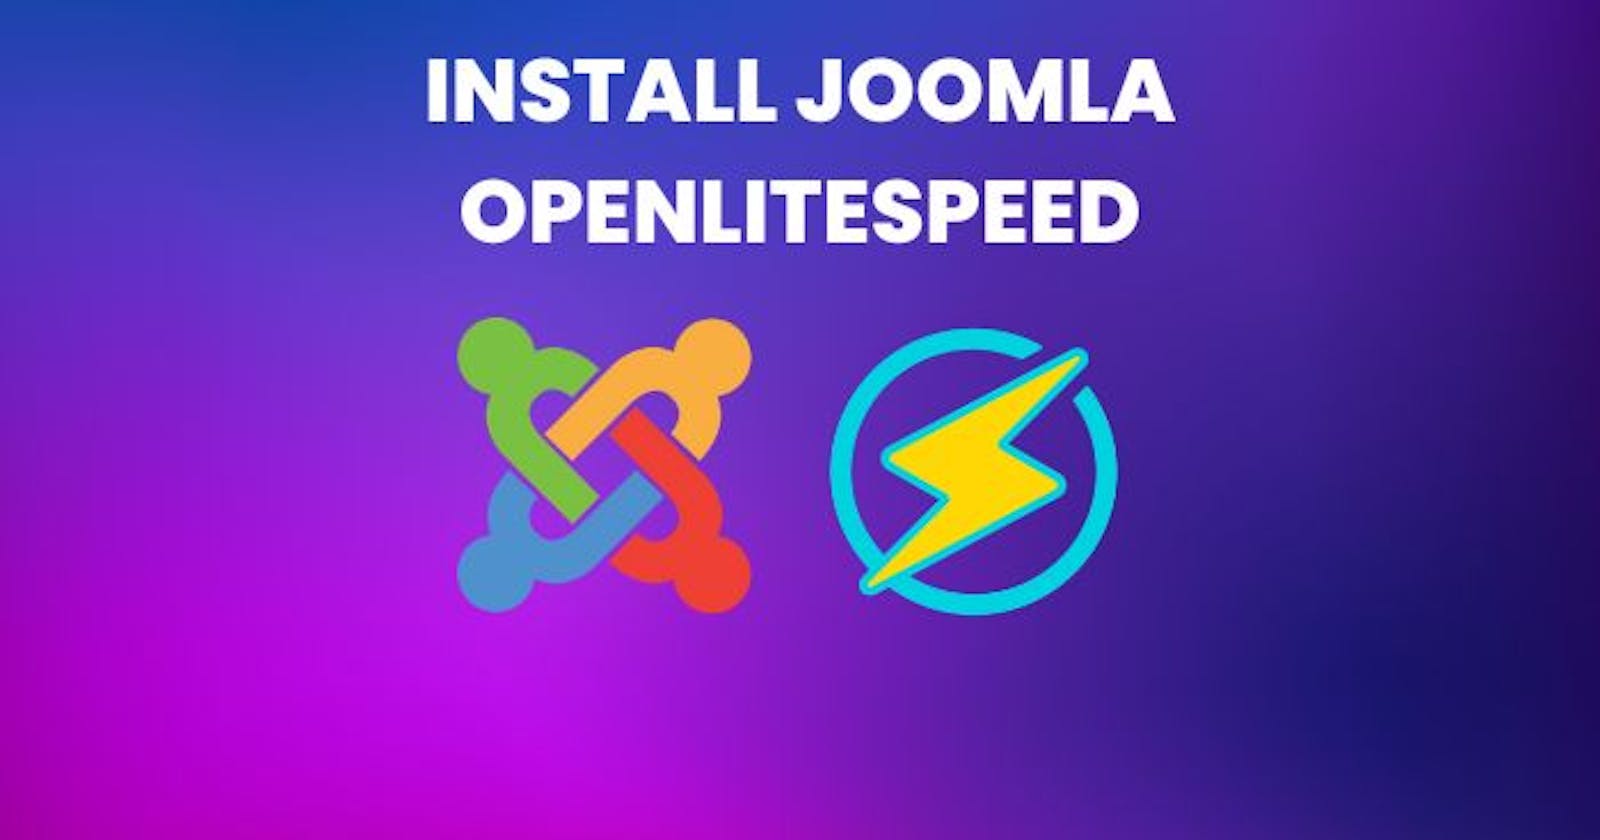 4 Steps Install Joomla OpenLiteSpeed on Ubuntu 20.04